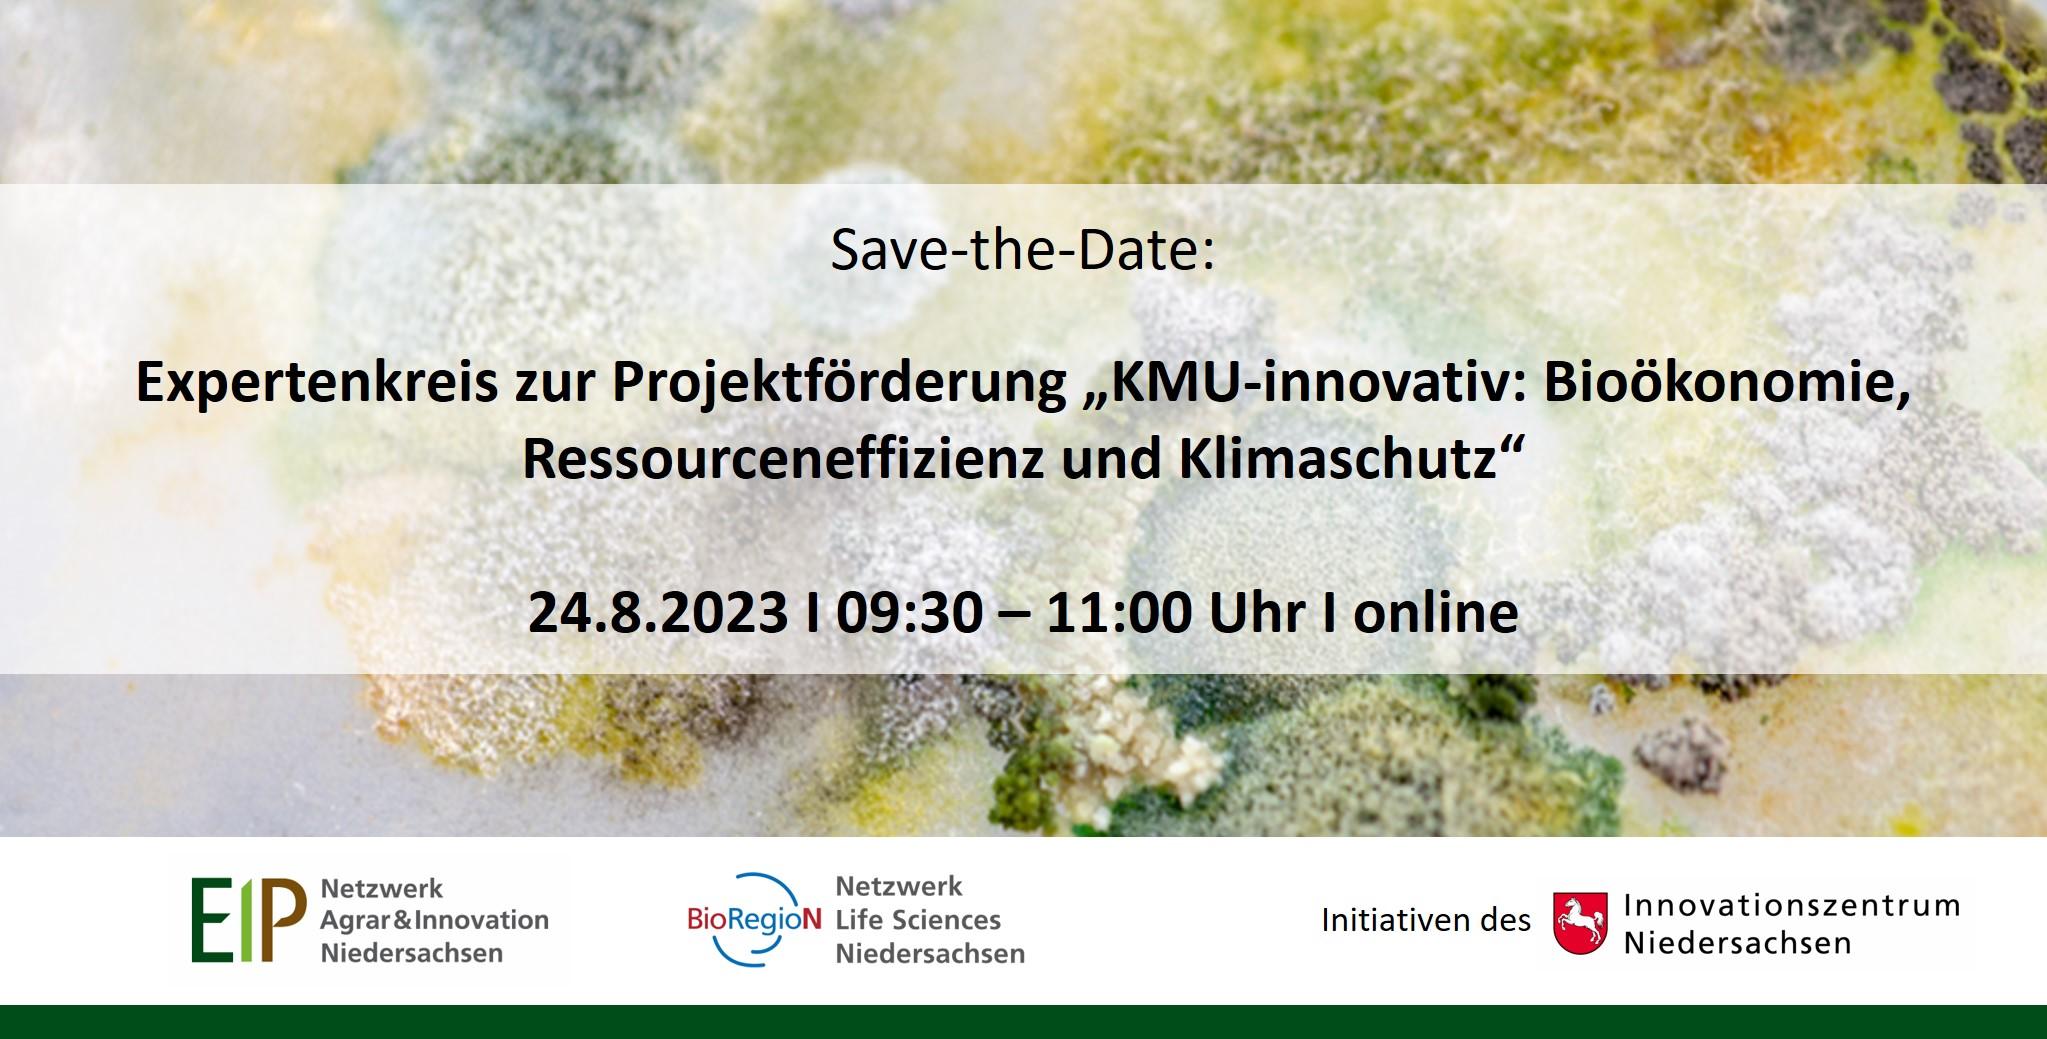 Save-the-Date: Expertenkreis zur Projektförderung „KMU-innovativ: Bioökonomie, Ressourceneffizienz und Klimaschutz”, 24.08.2023, online